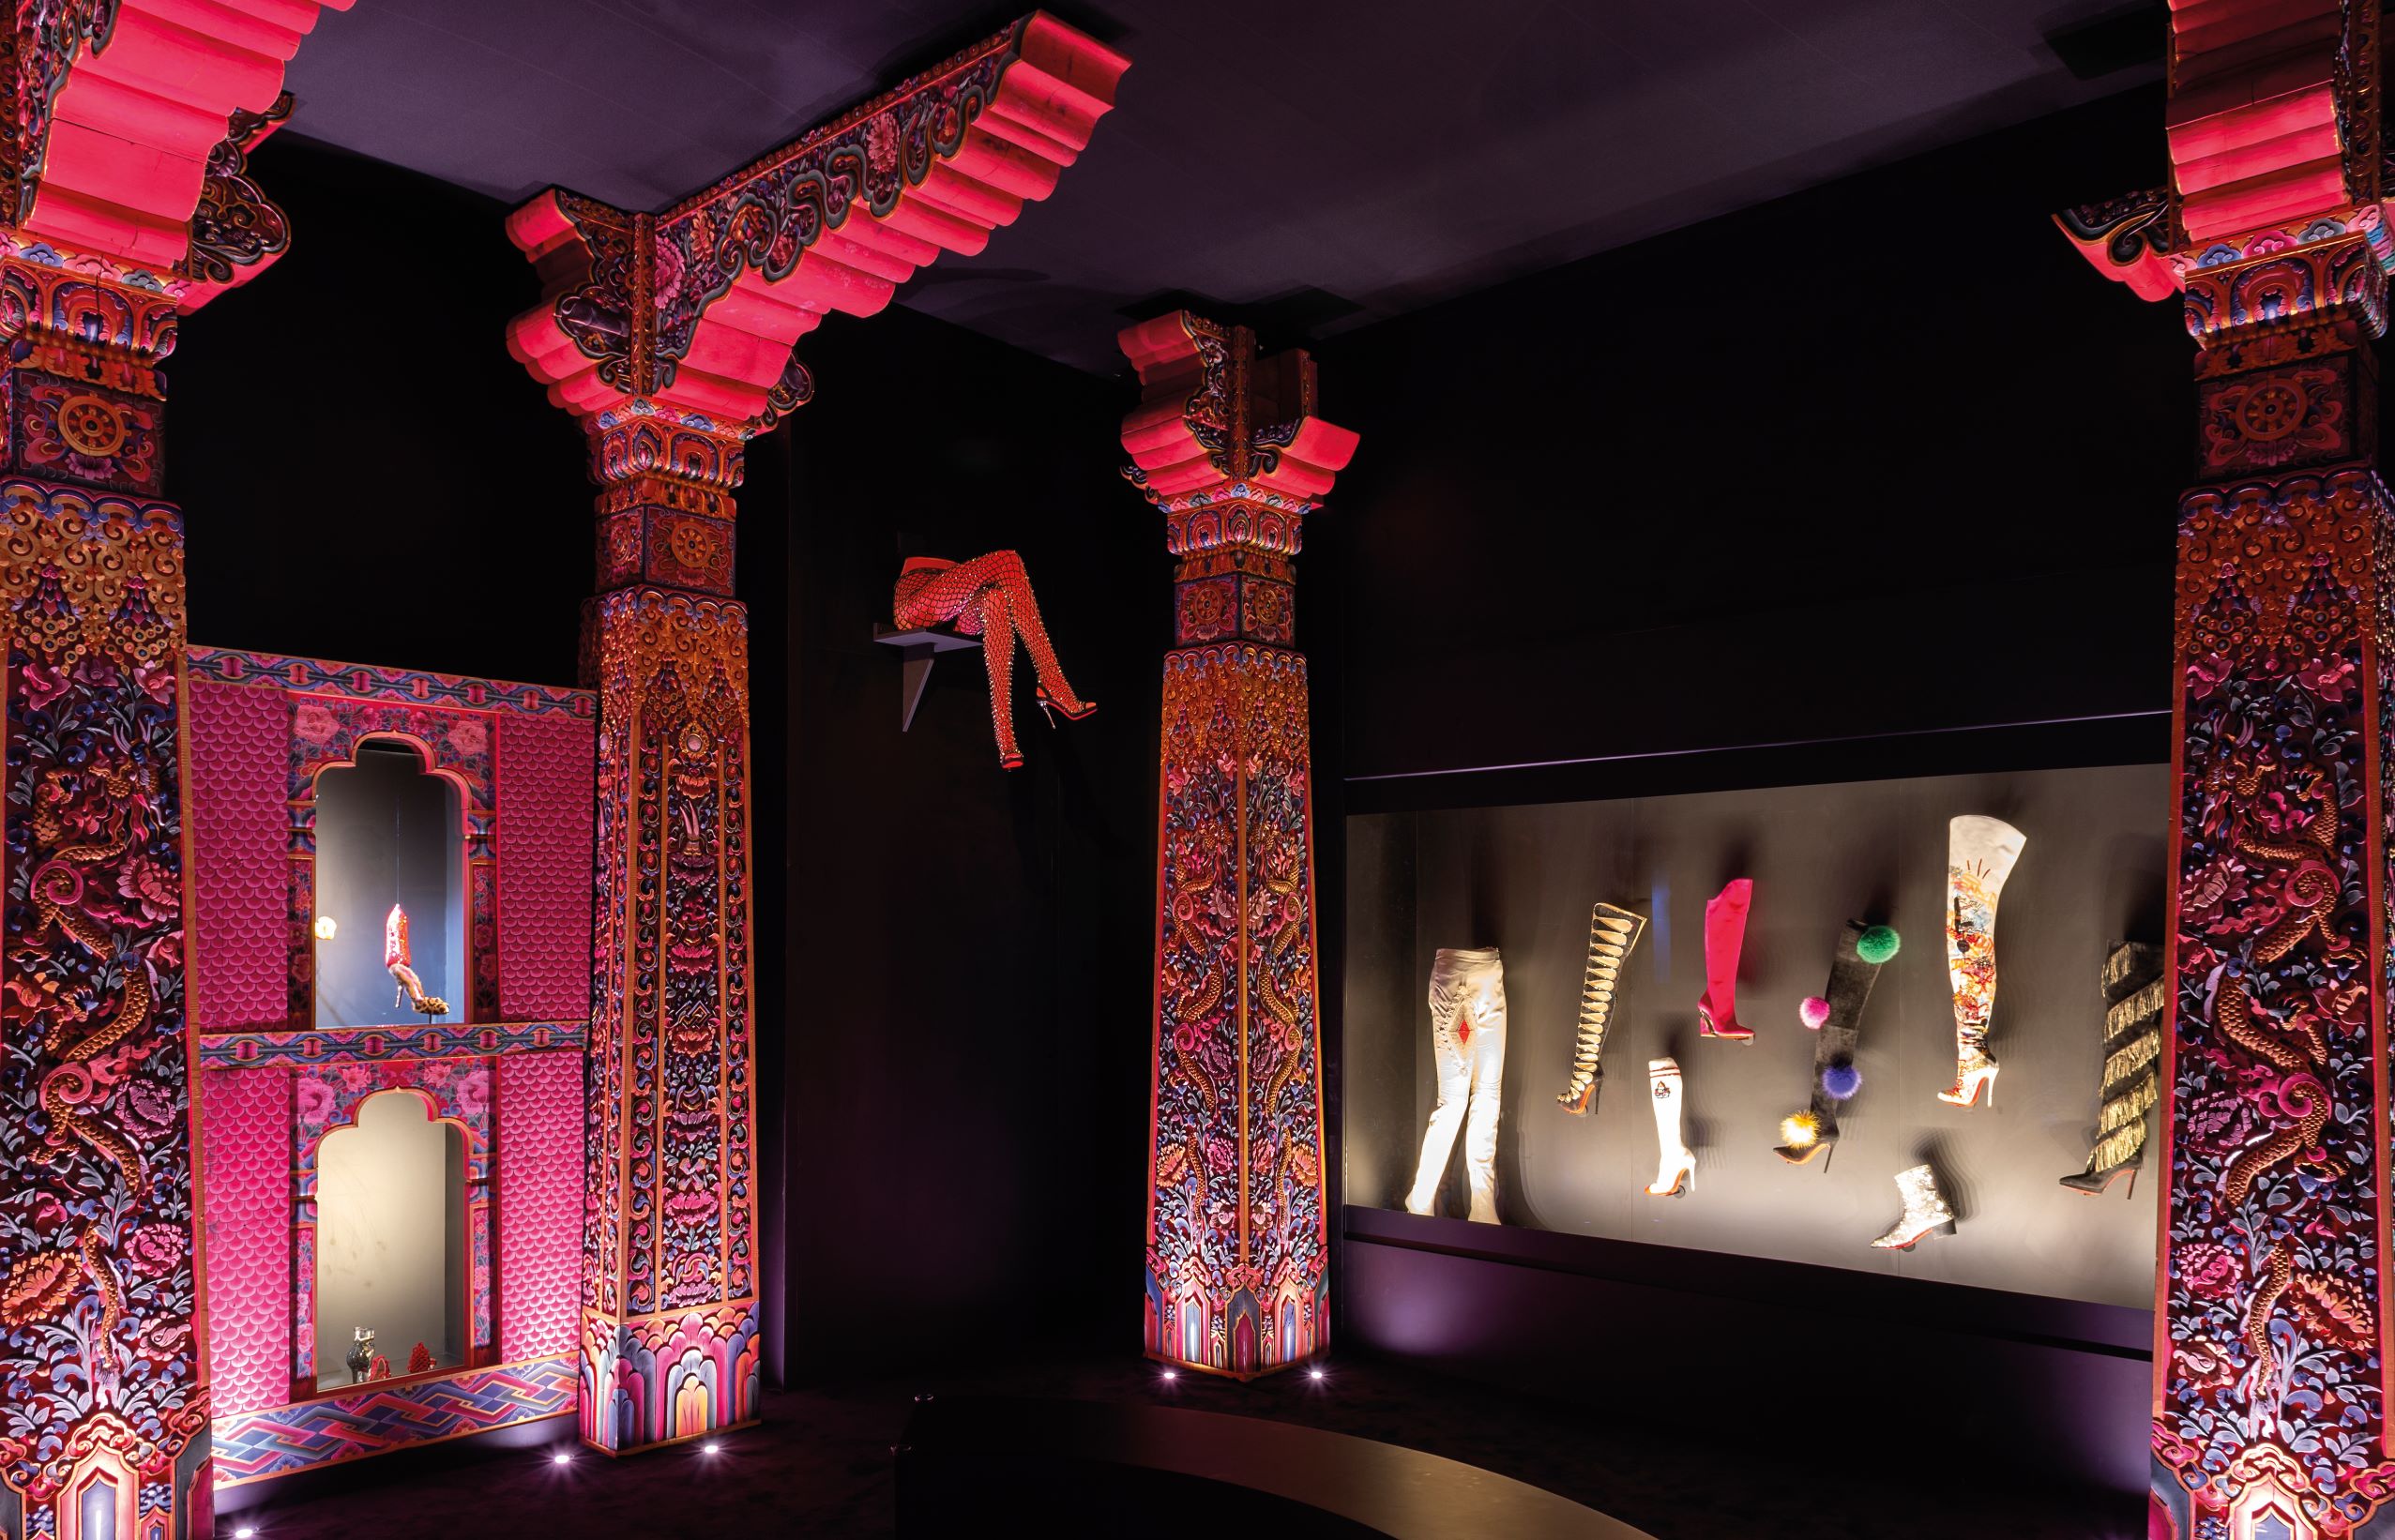 不丹劇院是 Christian Louboutin 重要的靈感泉源之一，雕花廊柱為最大特色。